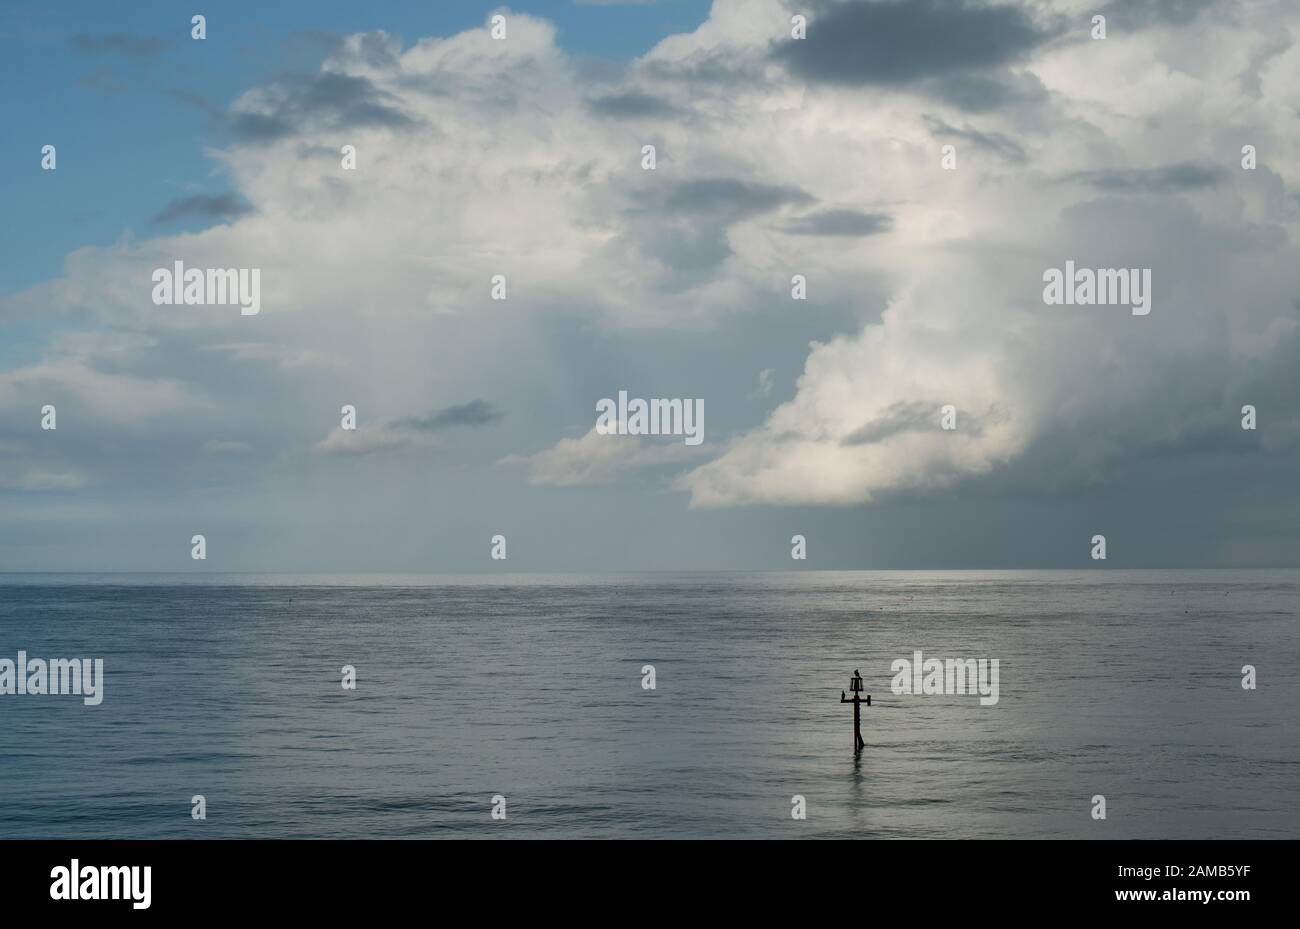 Una classica scena minimalista di mare, cielo azzurro orizzonte e nuvole delicatamente in movimento senza distrazioni catturate in una luce incantevole Foto Stock